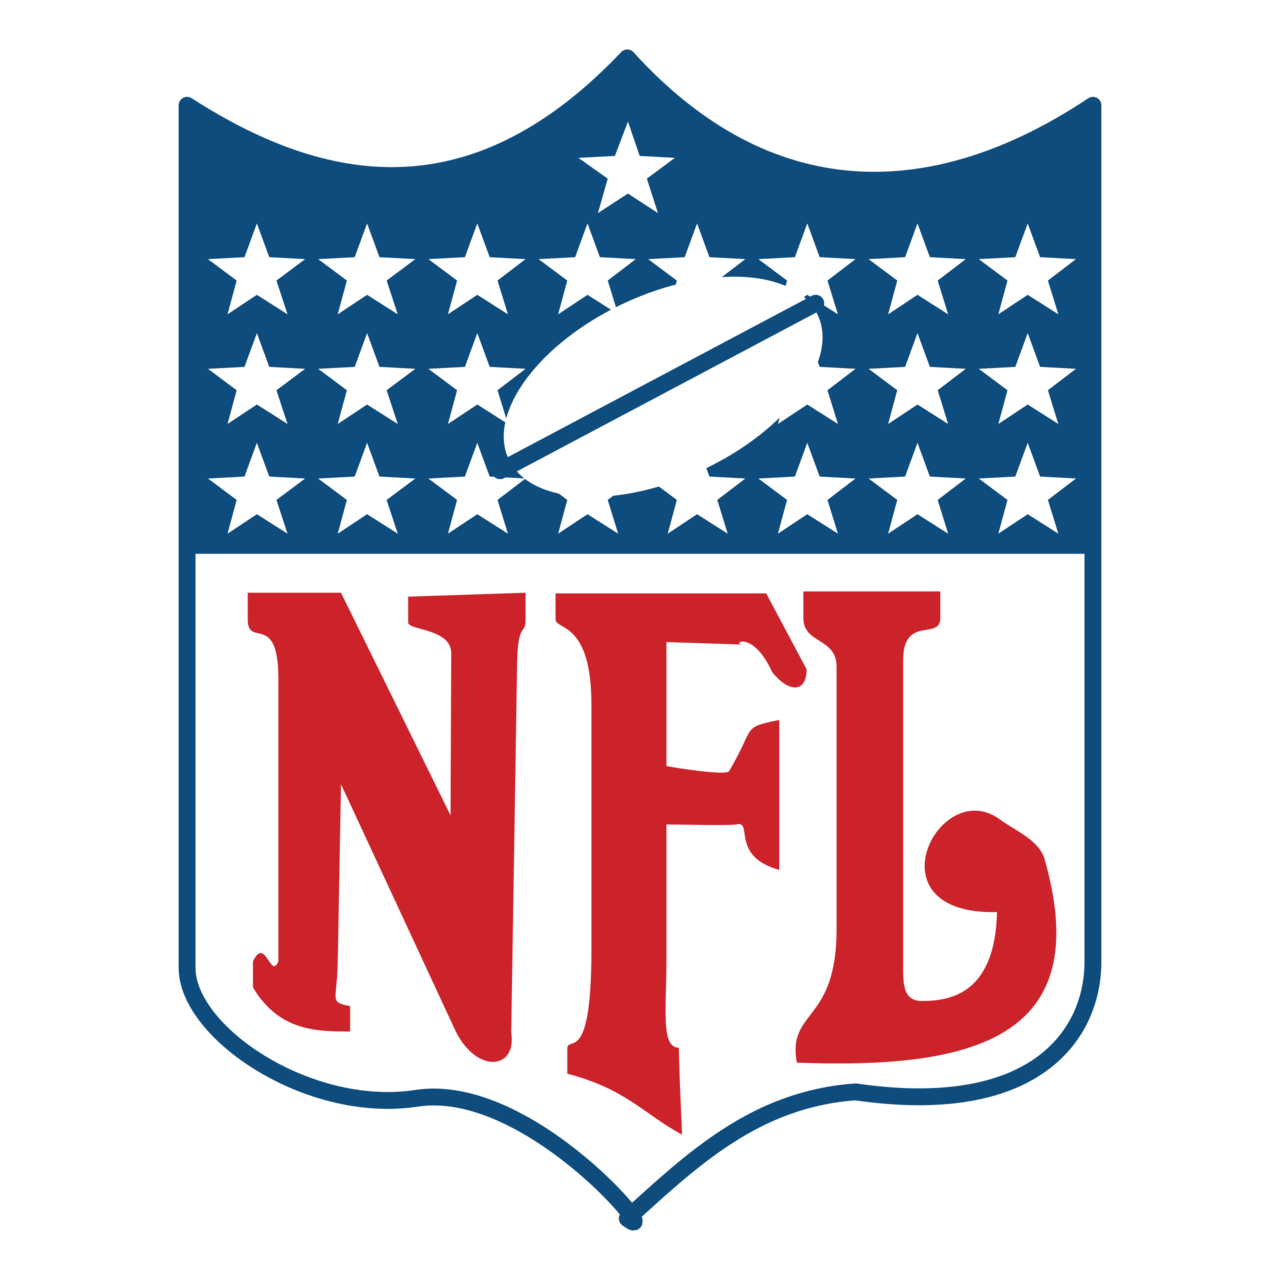 NFL Logo PNG Image File | PNG All